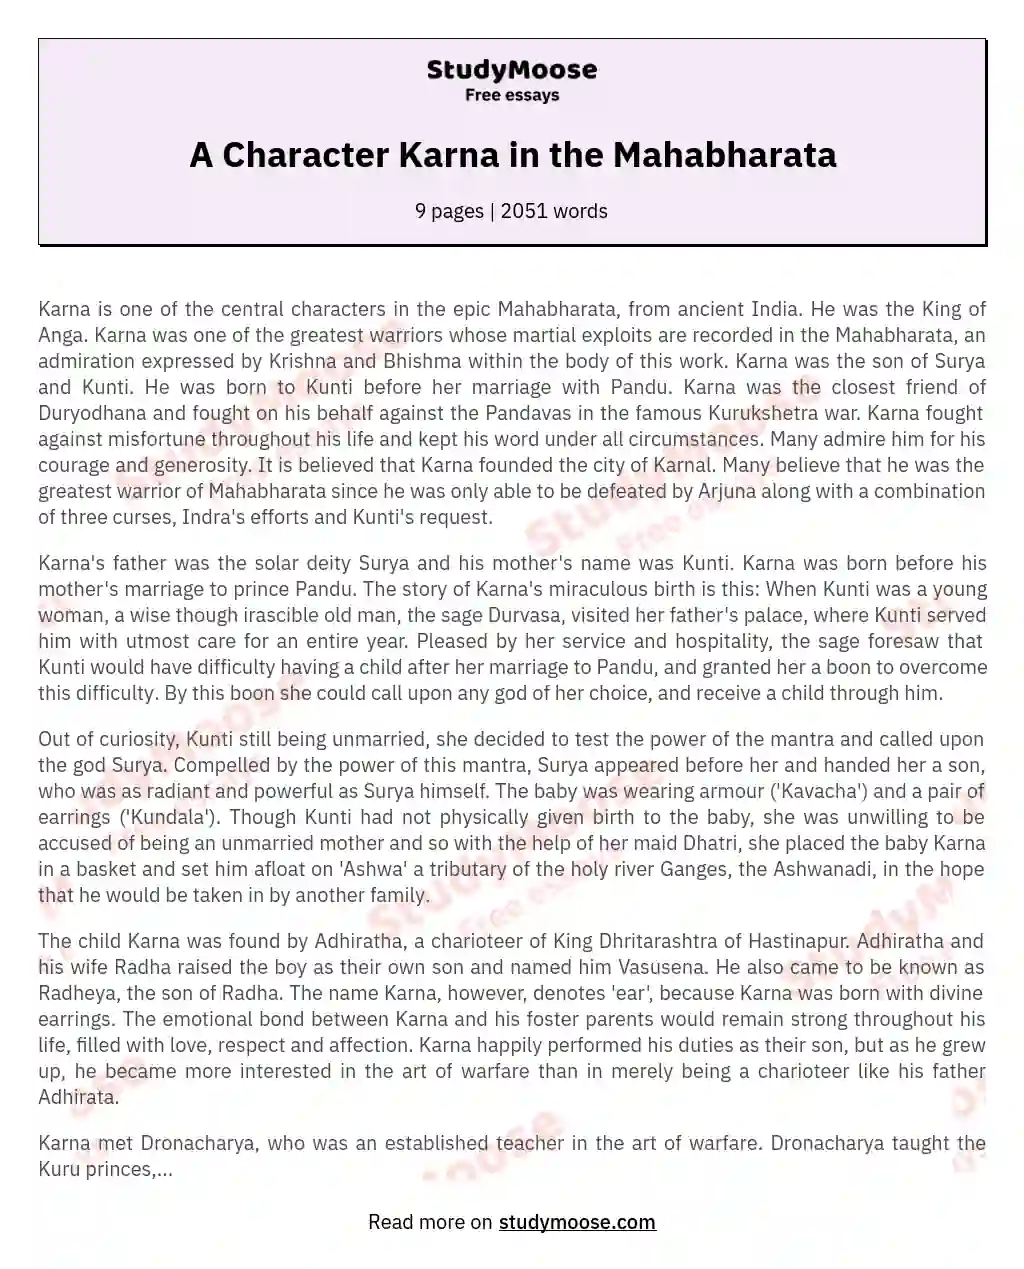 A Character Karna in the Mahabharata essay